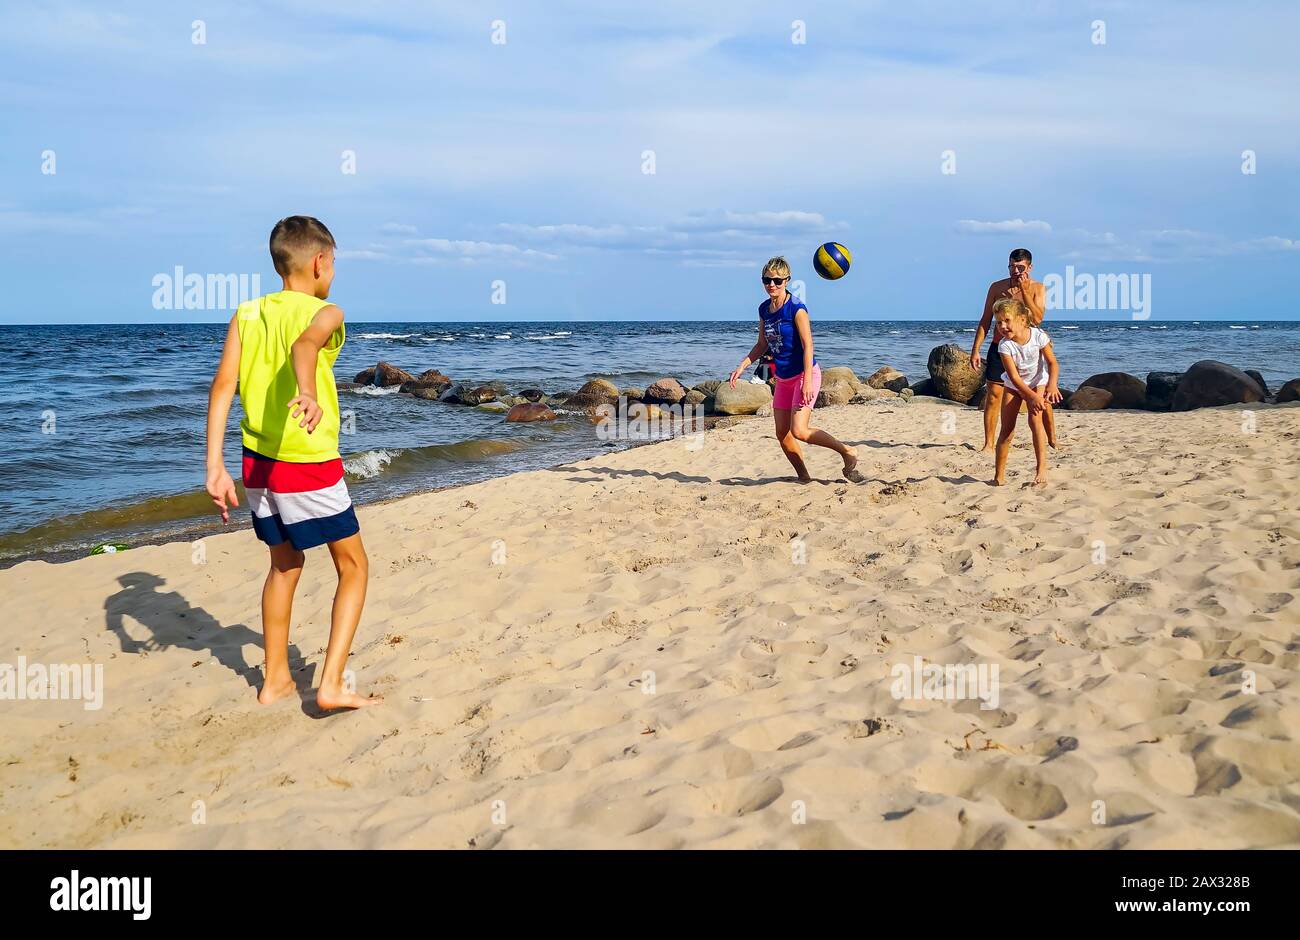 Una familia con un hijo y una hija jugando con una pelota en la playa Foto de stock